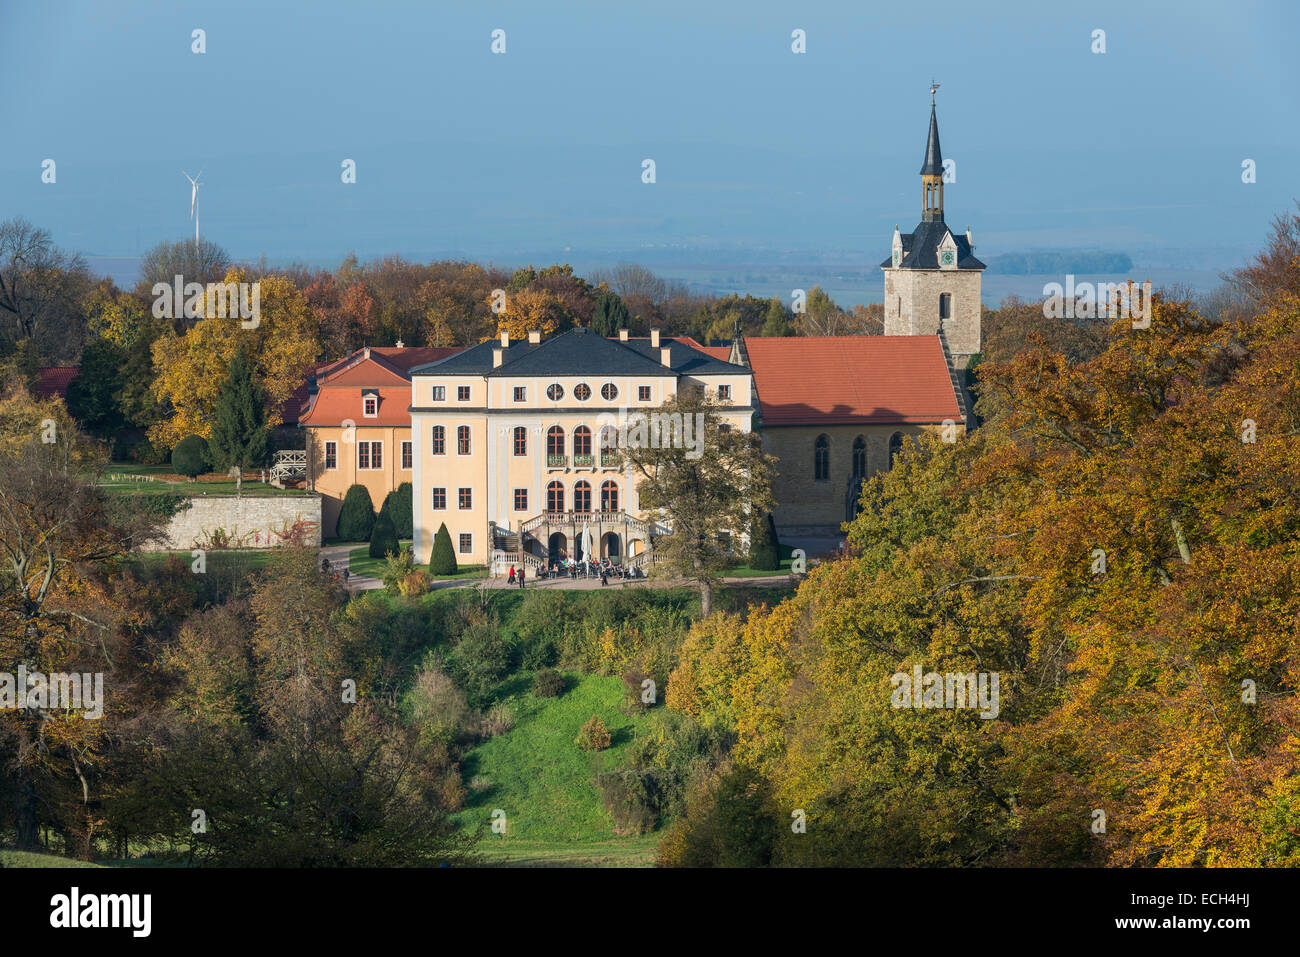 Schloss Ettersburg Castello con un parco paesaggistico, Sito Patrimonio Mondiale dell'UNESCO, Ettersburg, Weimar, Turingia, Germania Foto Stock